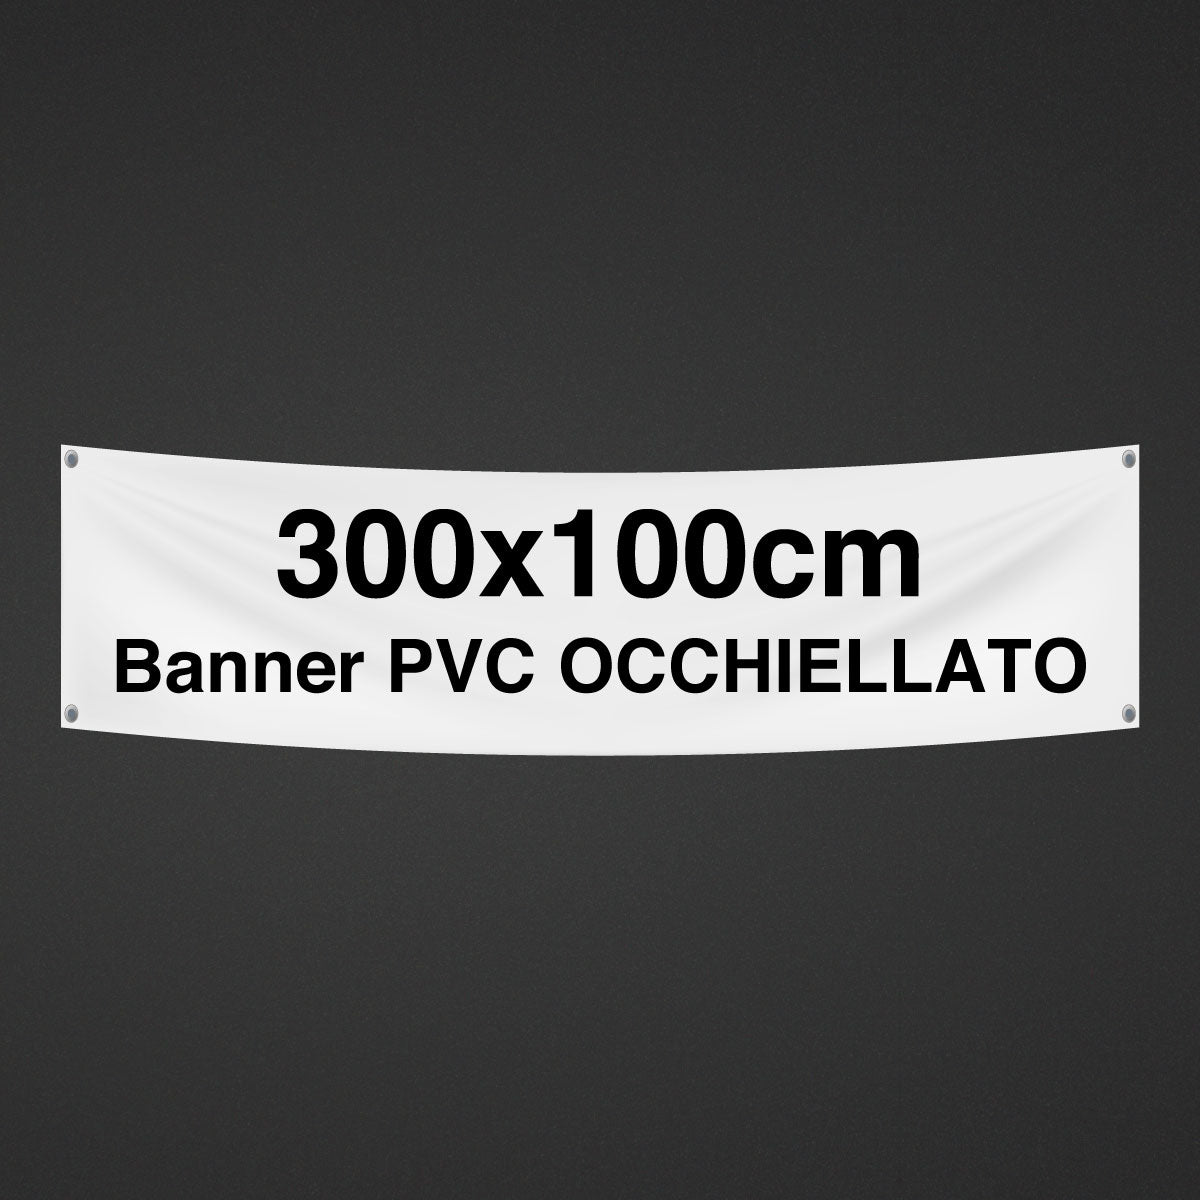 Banners con ojales y PVC reforzado